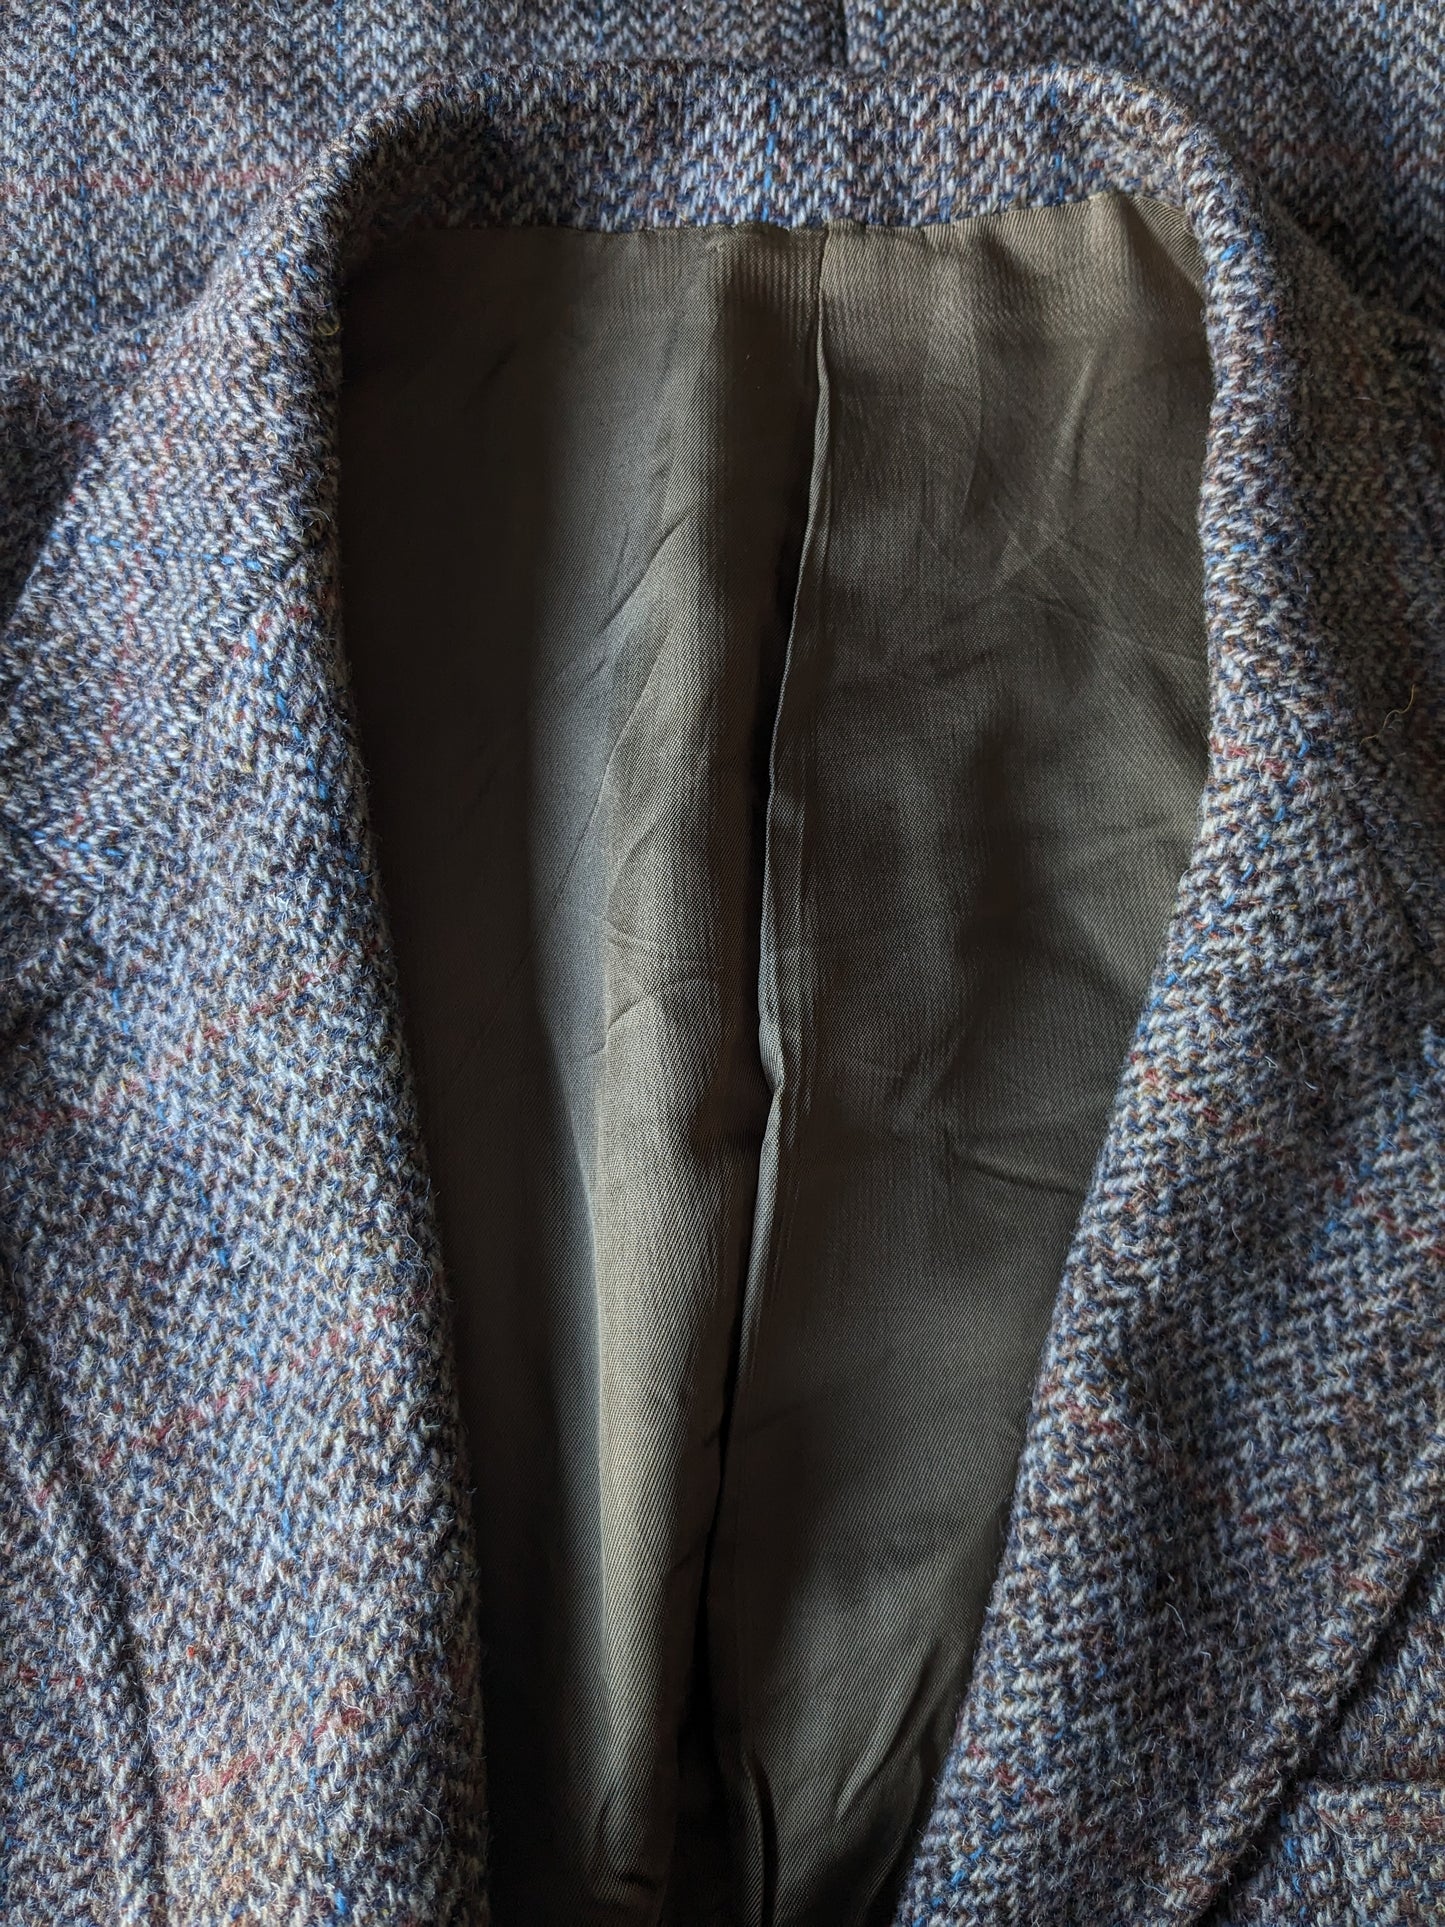 Giacca di lana pendleton. Moto di aborso di aringhe marrone con striscia blu rossa. Taglia 50 / M.